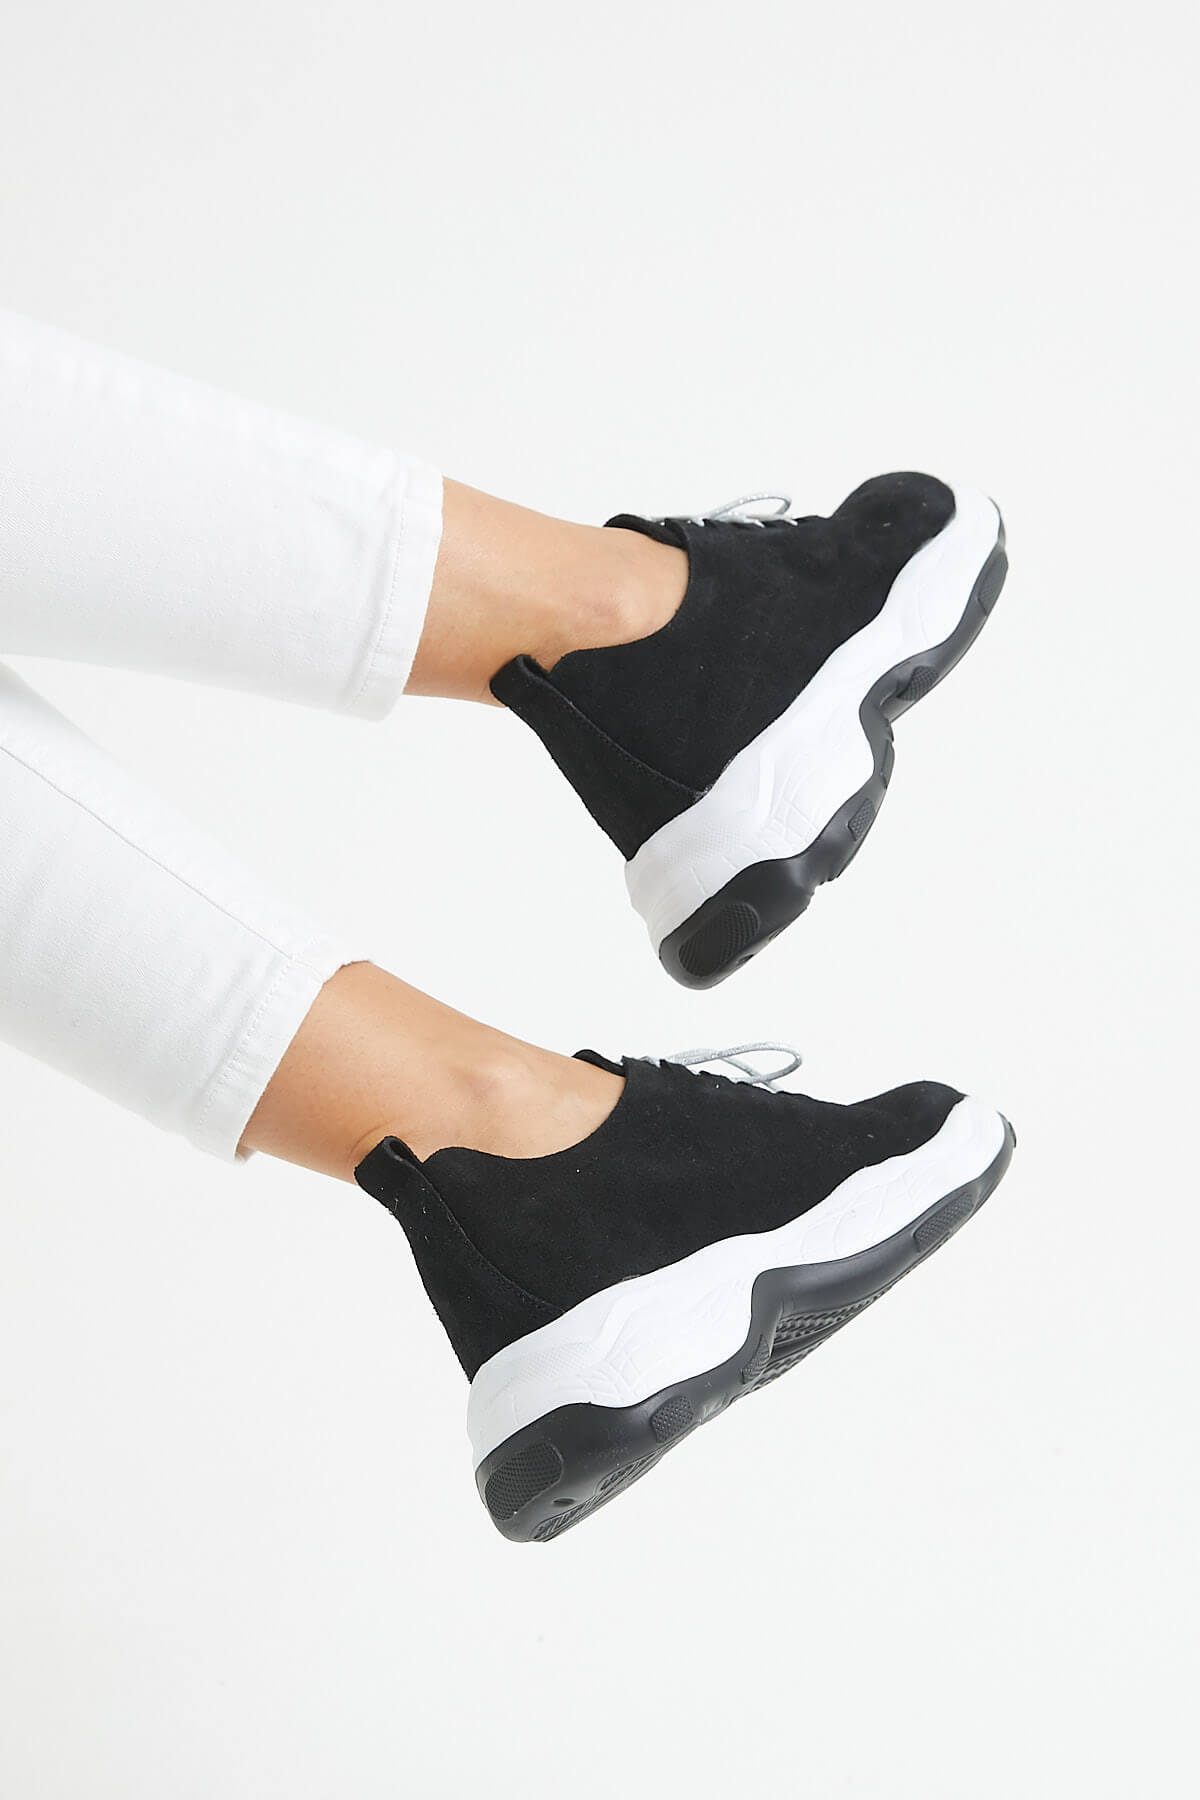 Kadın Deri Sneakers Siyah 2014201Y - Thumbnail